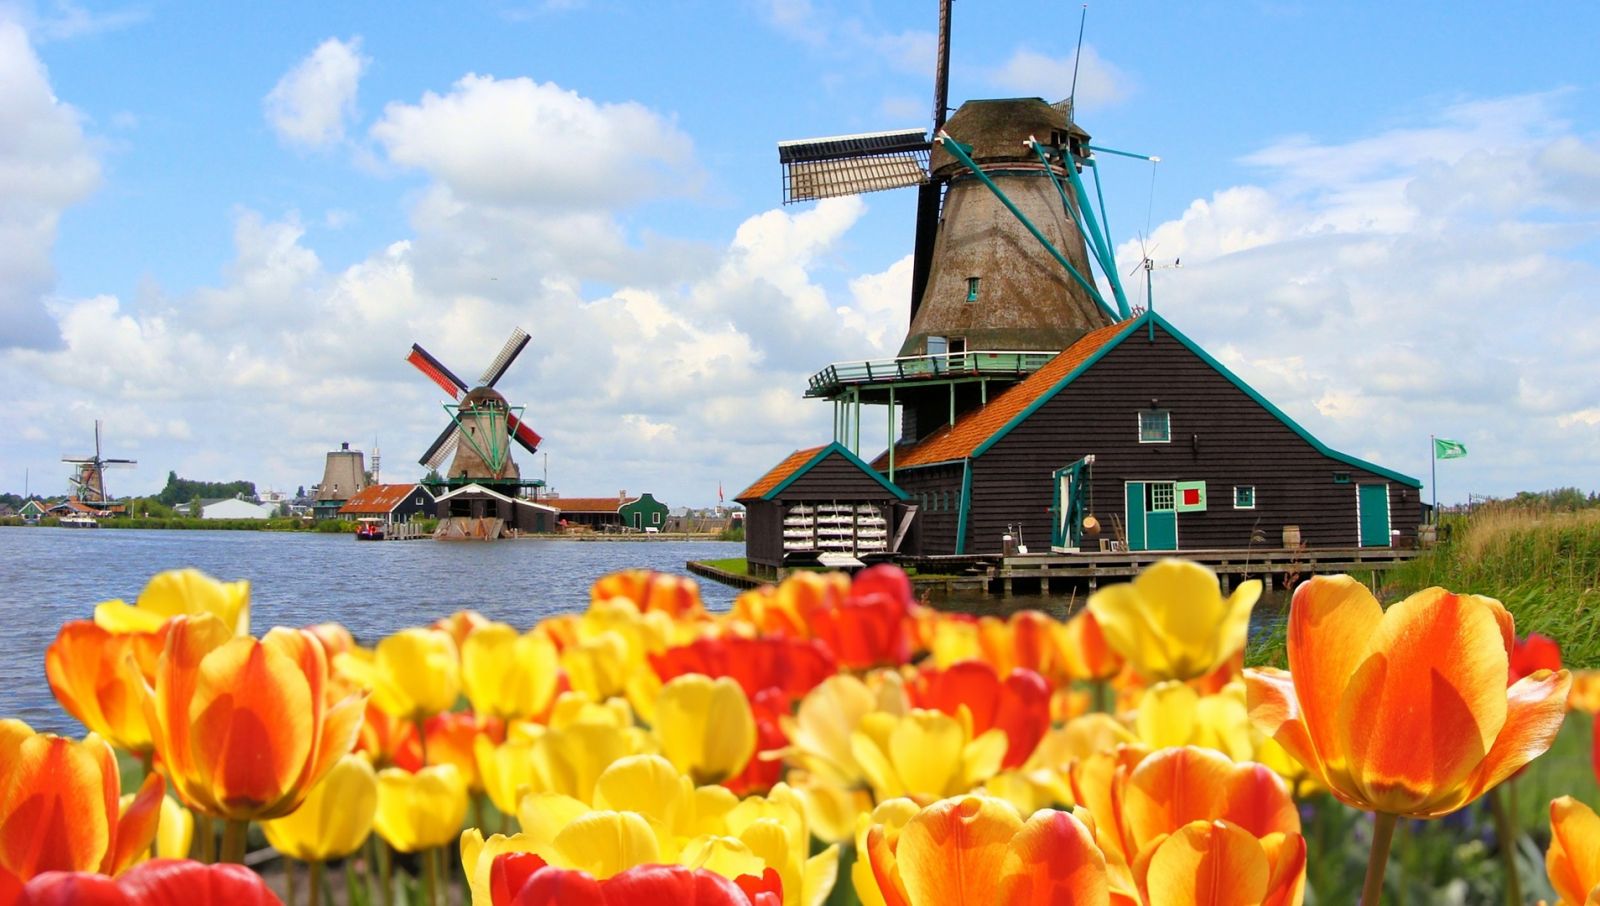 Hà Lan với vẻ đẹp yên bình và nổi tiếng với các bến cảng, cối xay gió, giày gỗ, hoa tulip